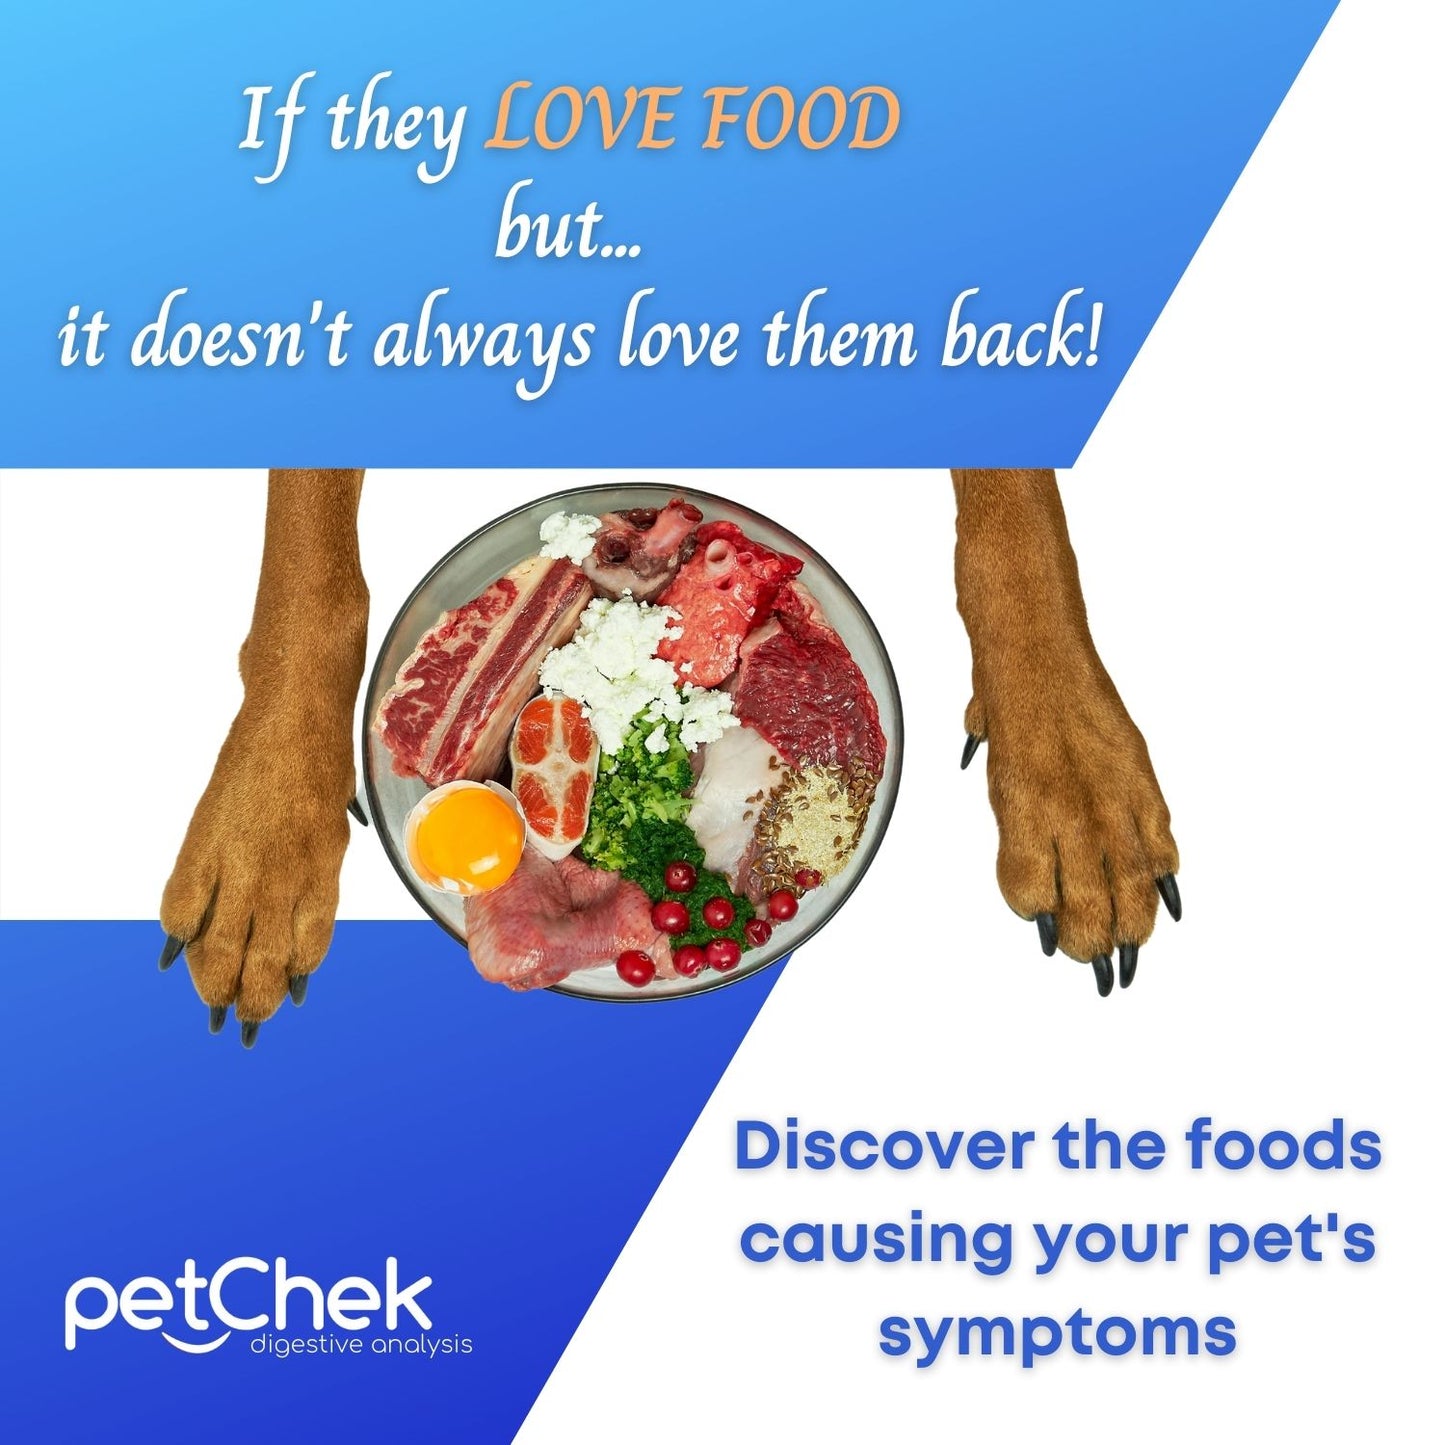 Food Intolerance - Pet - Premium Test